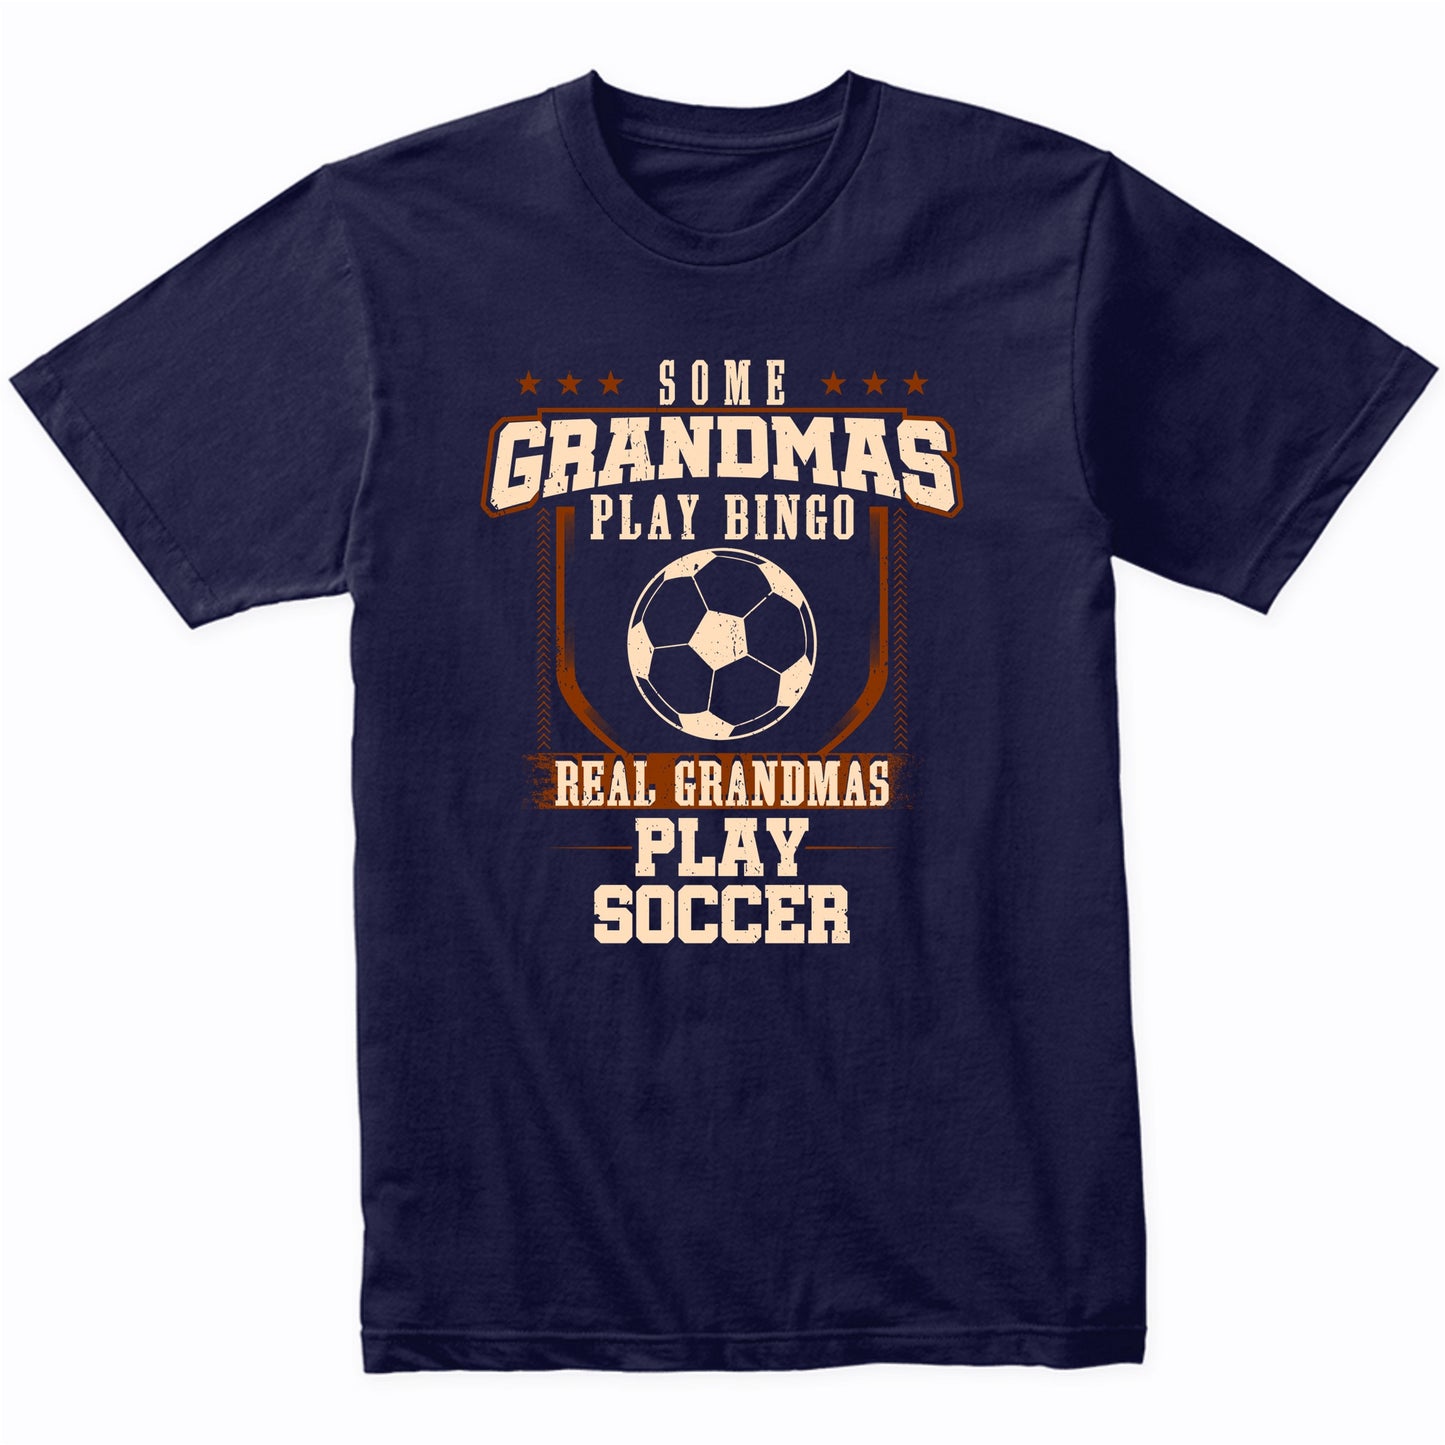 Some Grandmas Play Bingo Real Grandmas Play Soccer Shirt